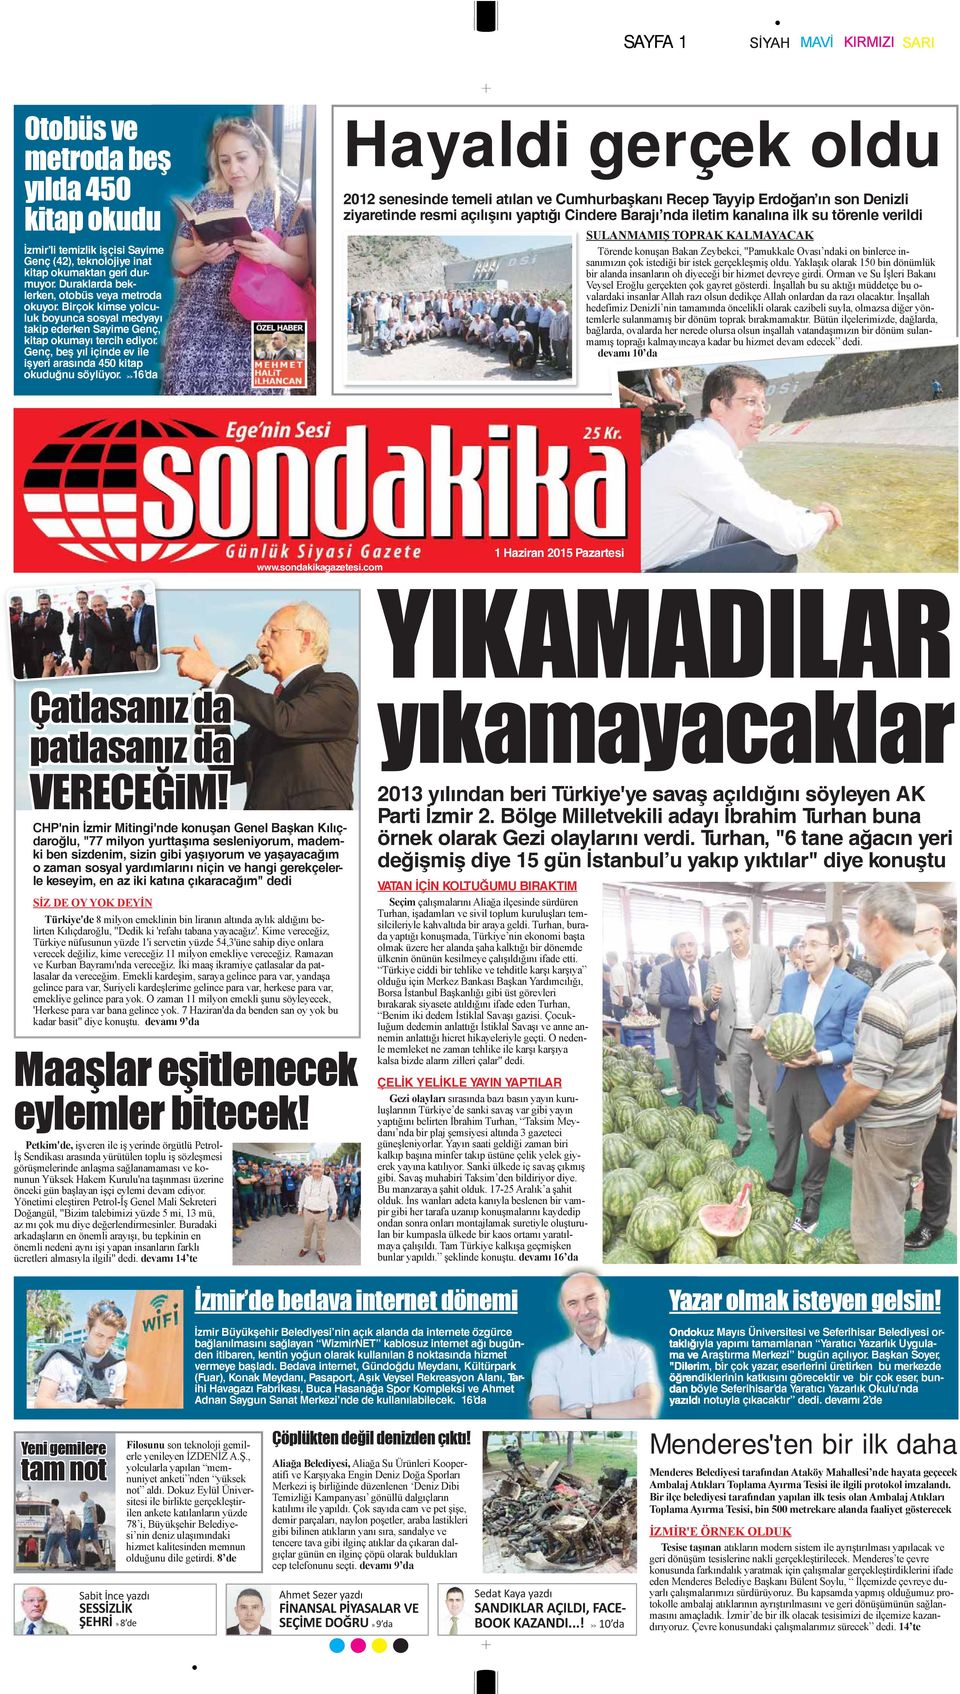 >>16 da Hayaldi gerçek oldu 2012 senesinde temeli atılan ve Cumhurbaşkanı Recep Tayyip Erdoğan ın son Denizli ziyaretinde resmi açılışını yaptığı Cindere Barajı nda iletim kanalına ilk su törenle